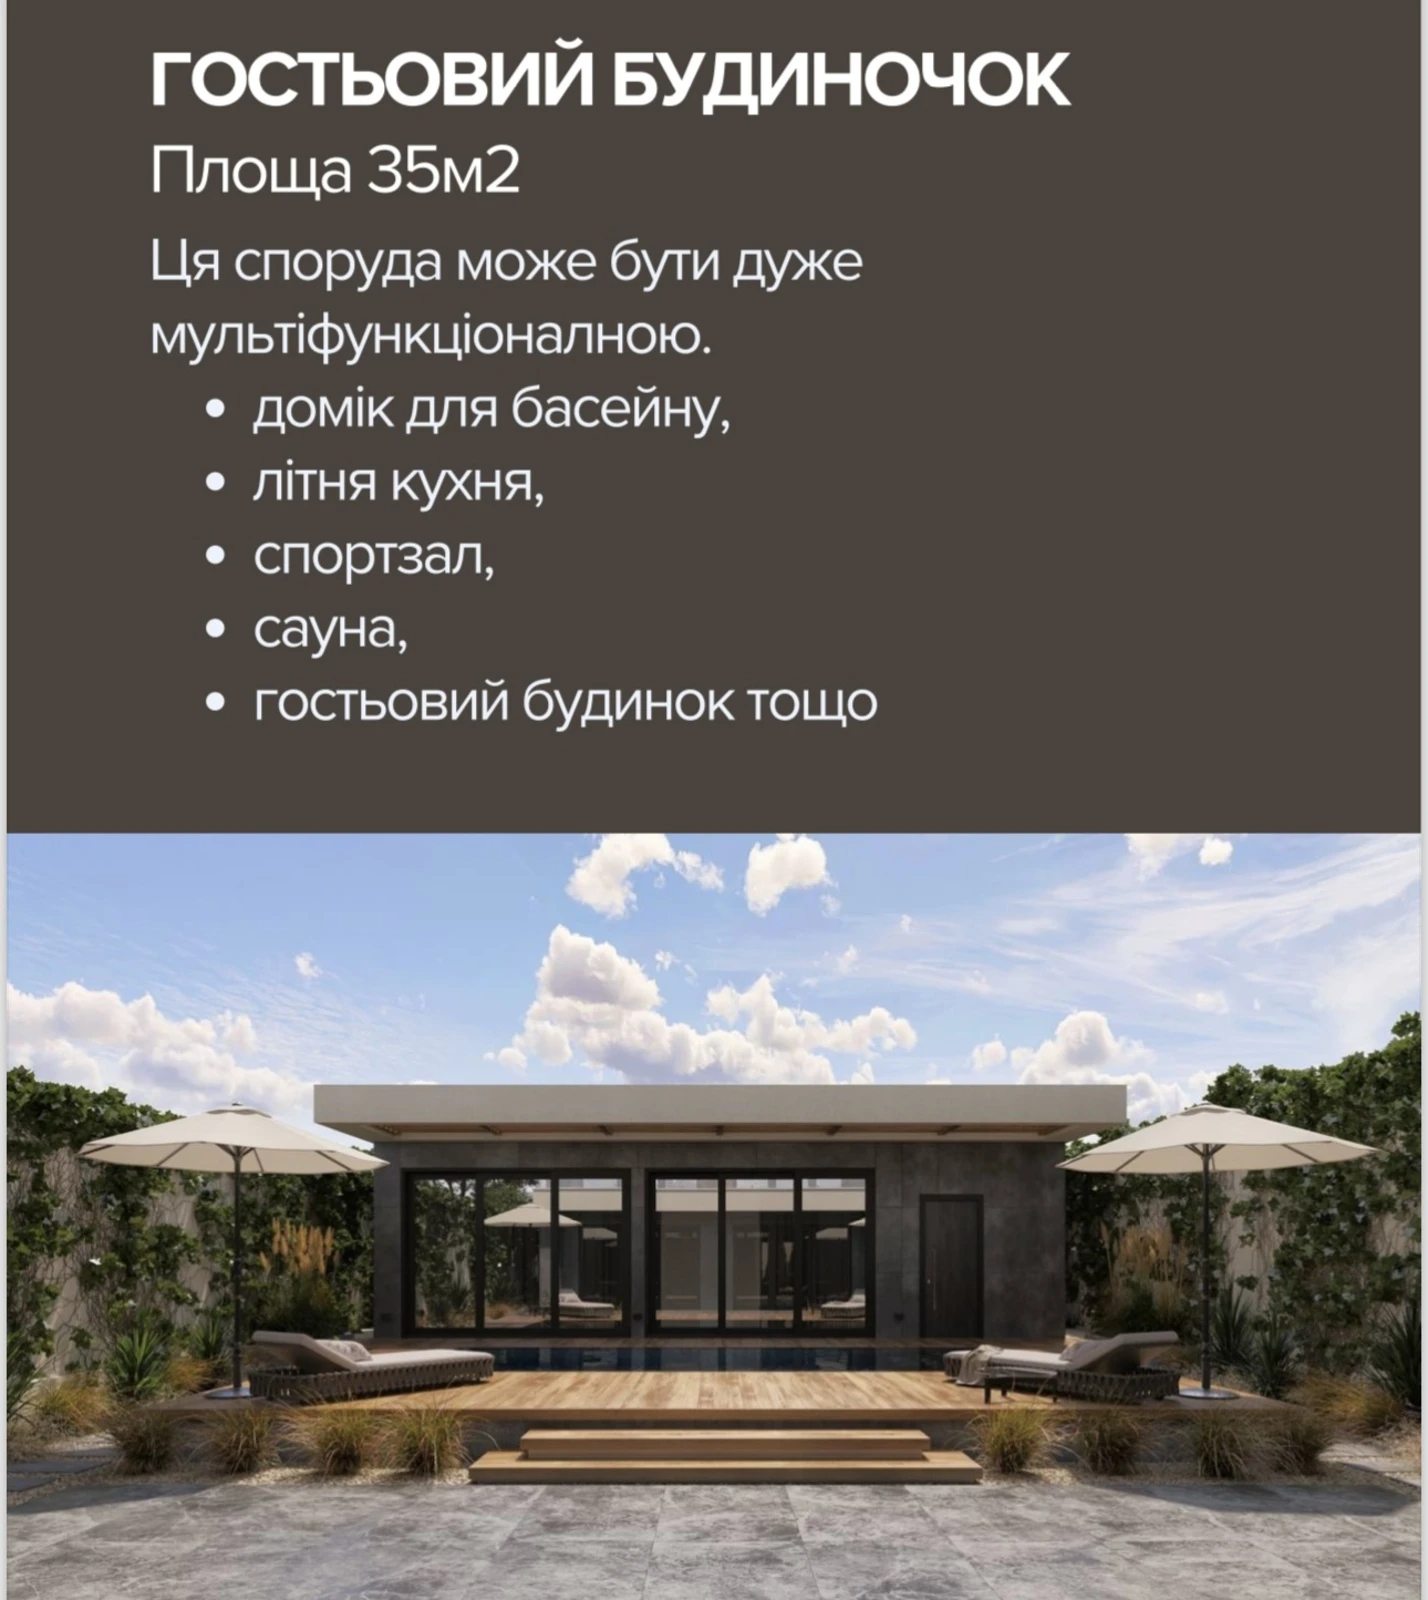 Продаж будинку. 230 m², 2 floors. Морський проспект, Одеса. 